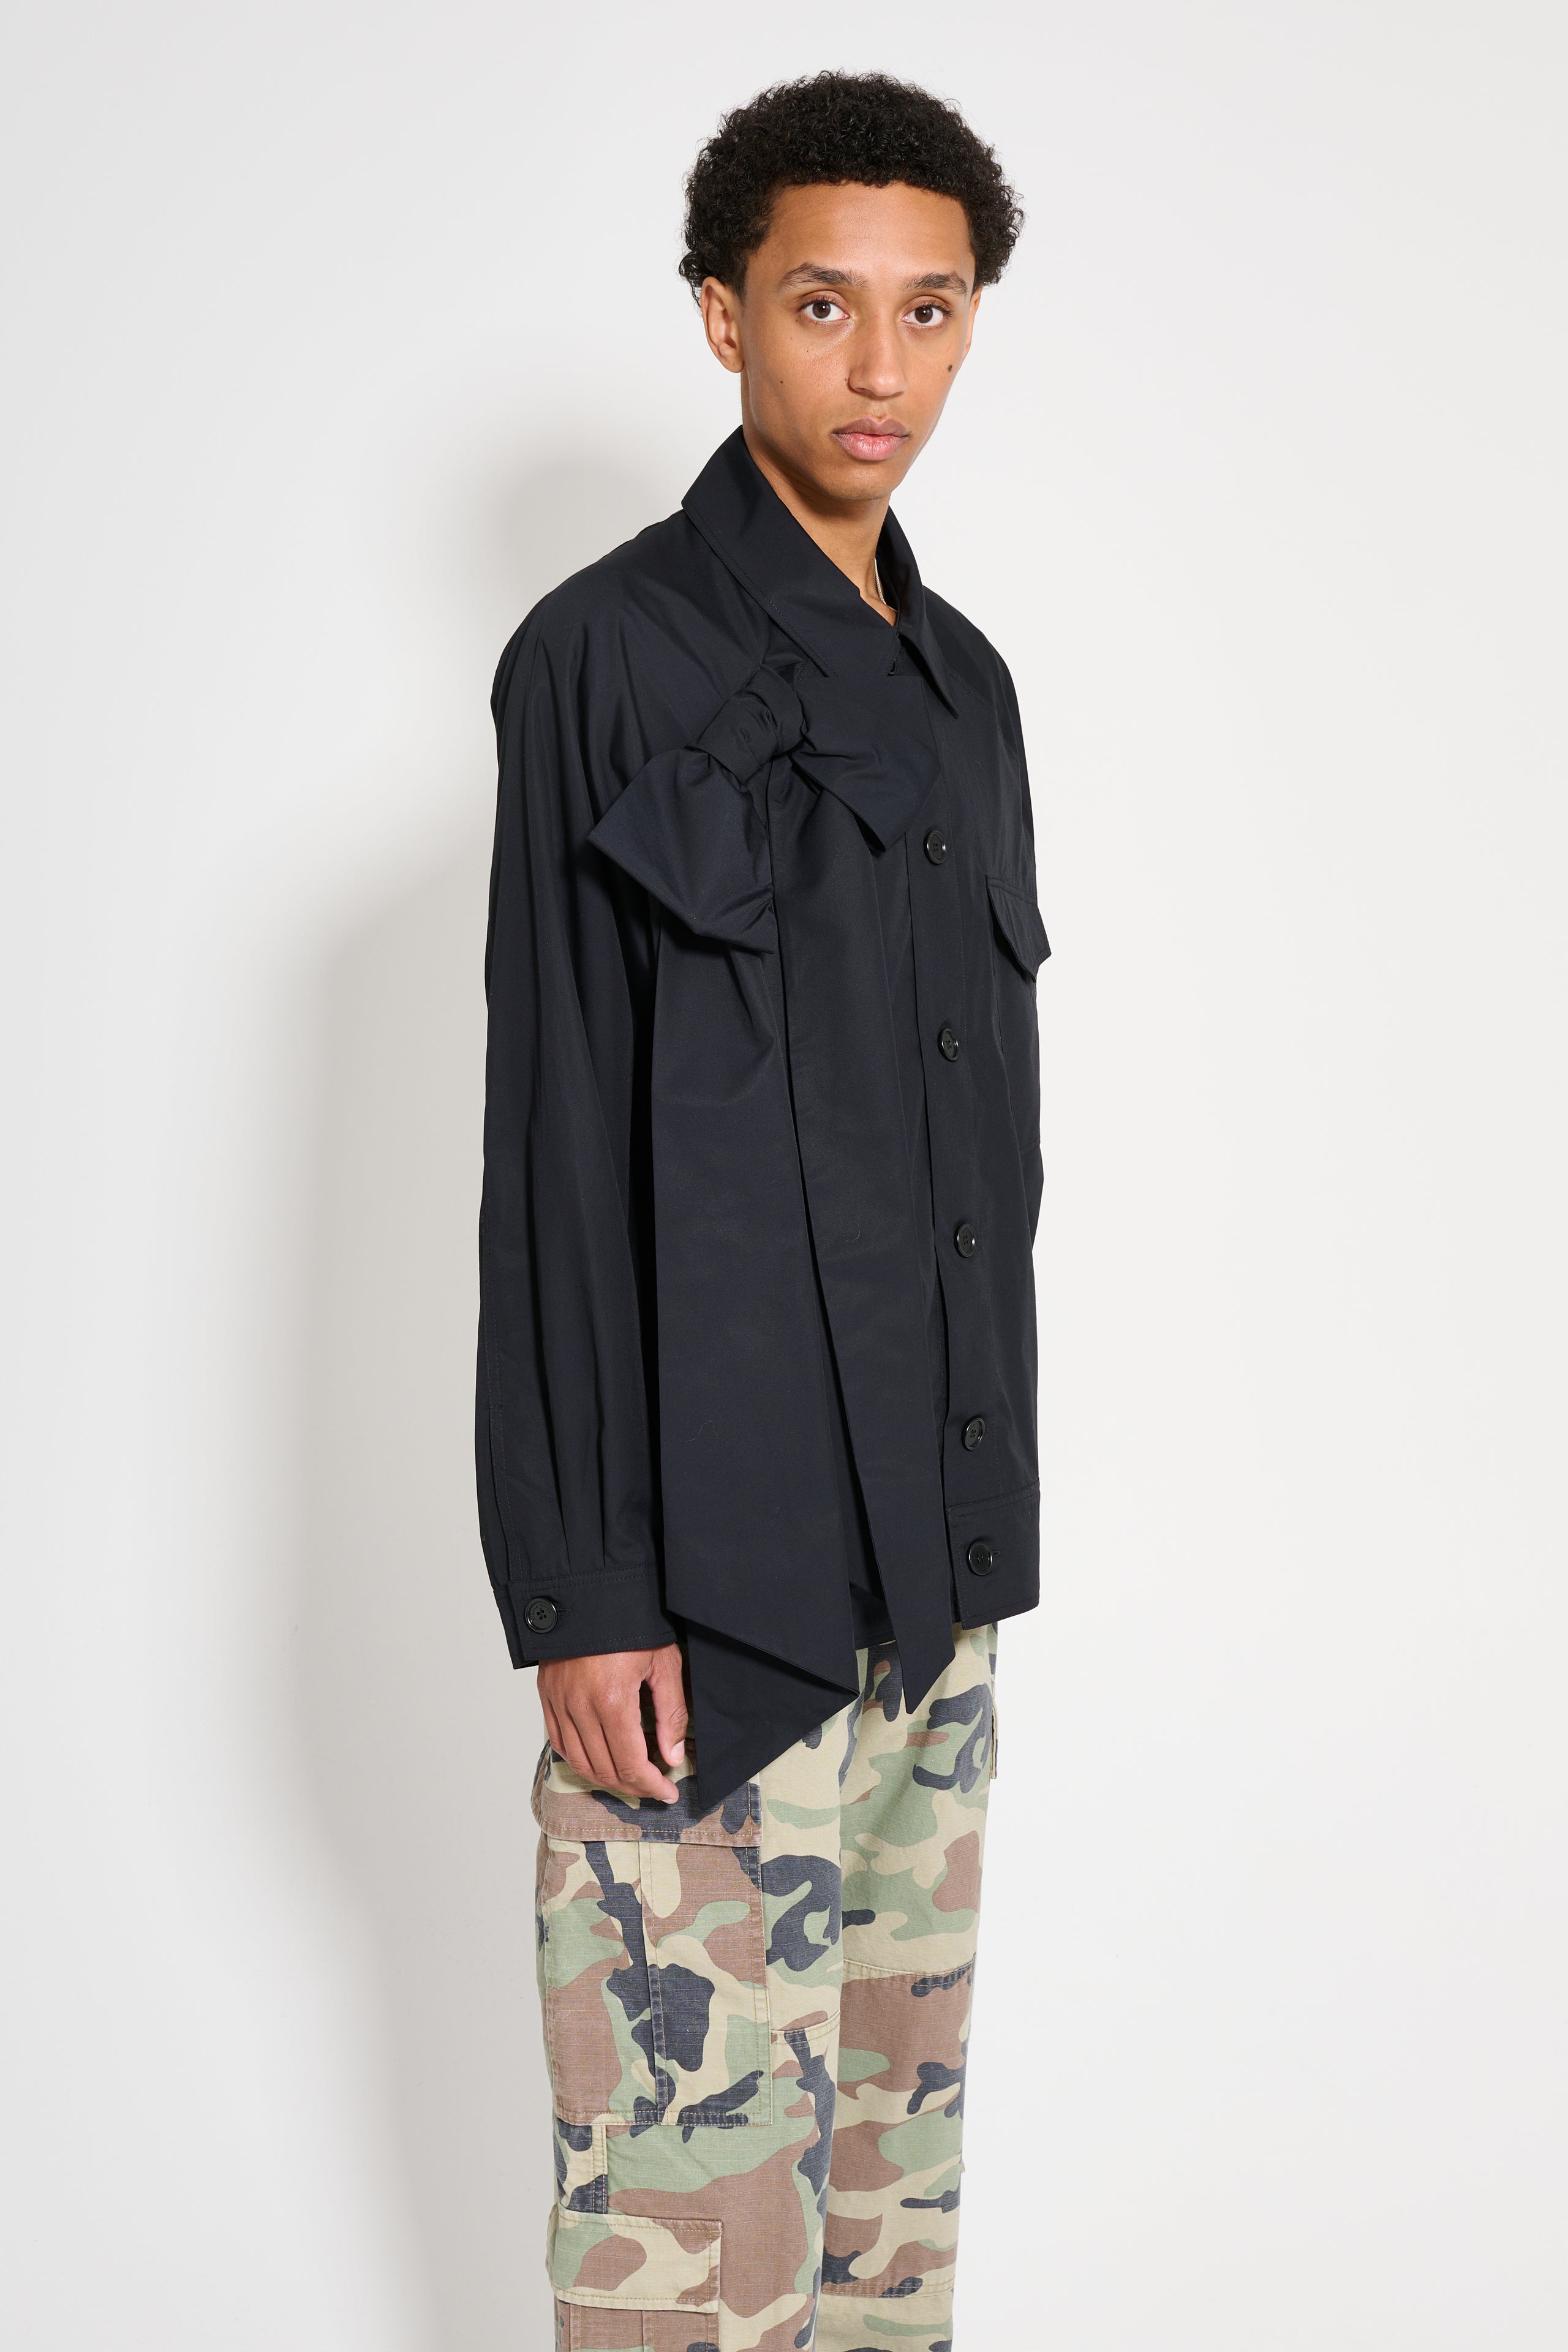 Simone Rocha Dolman Workwear Jacket With Bow Black